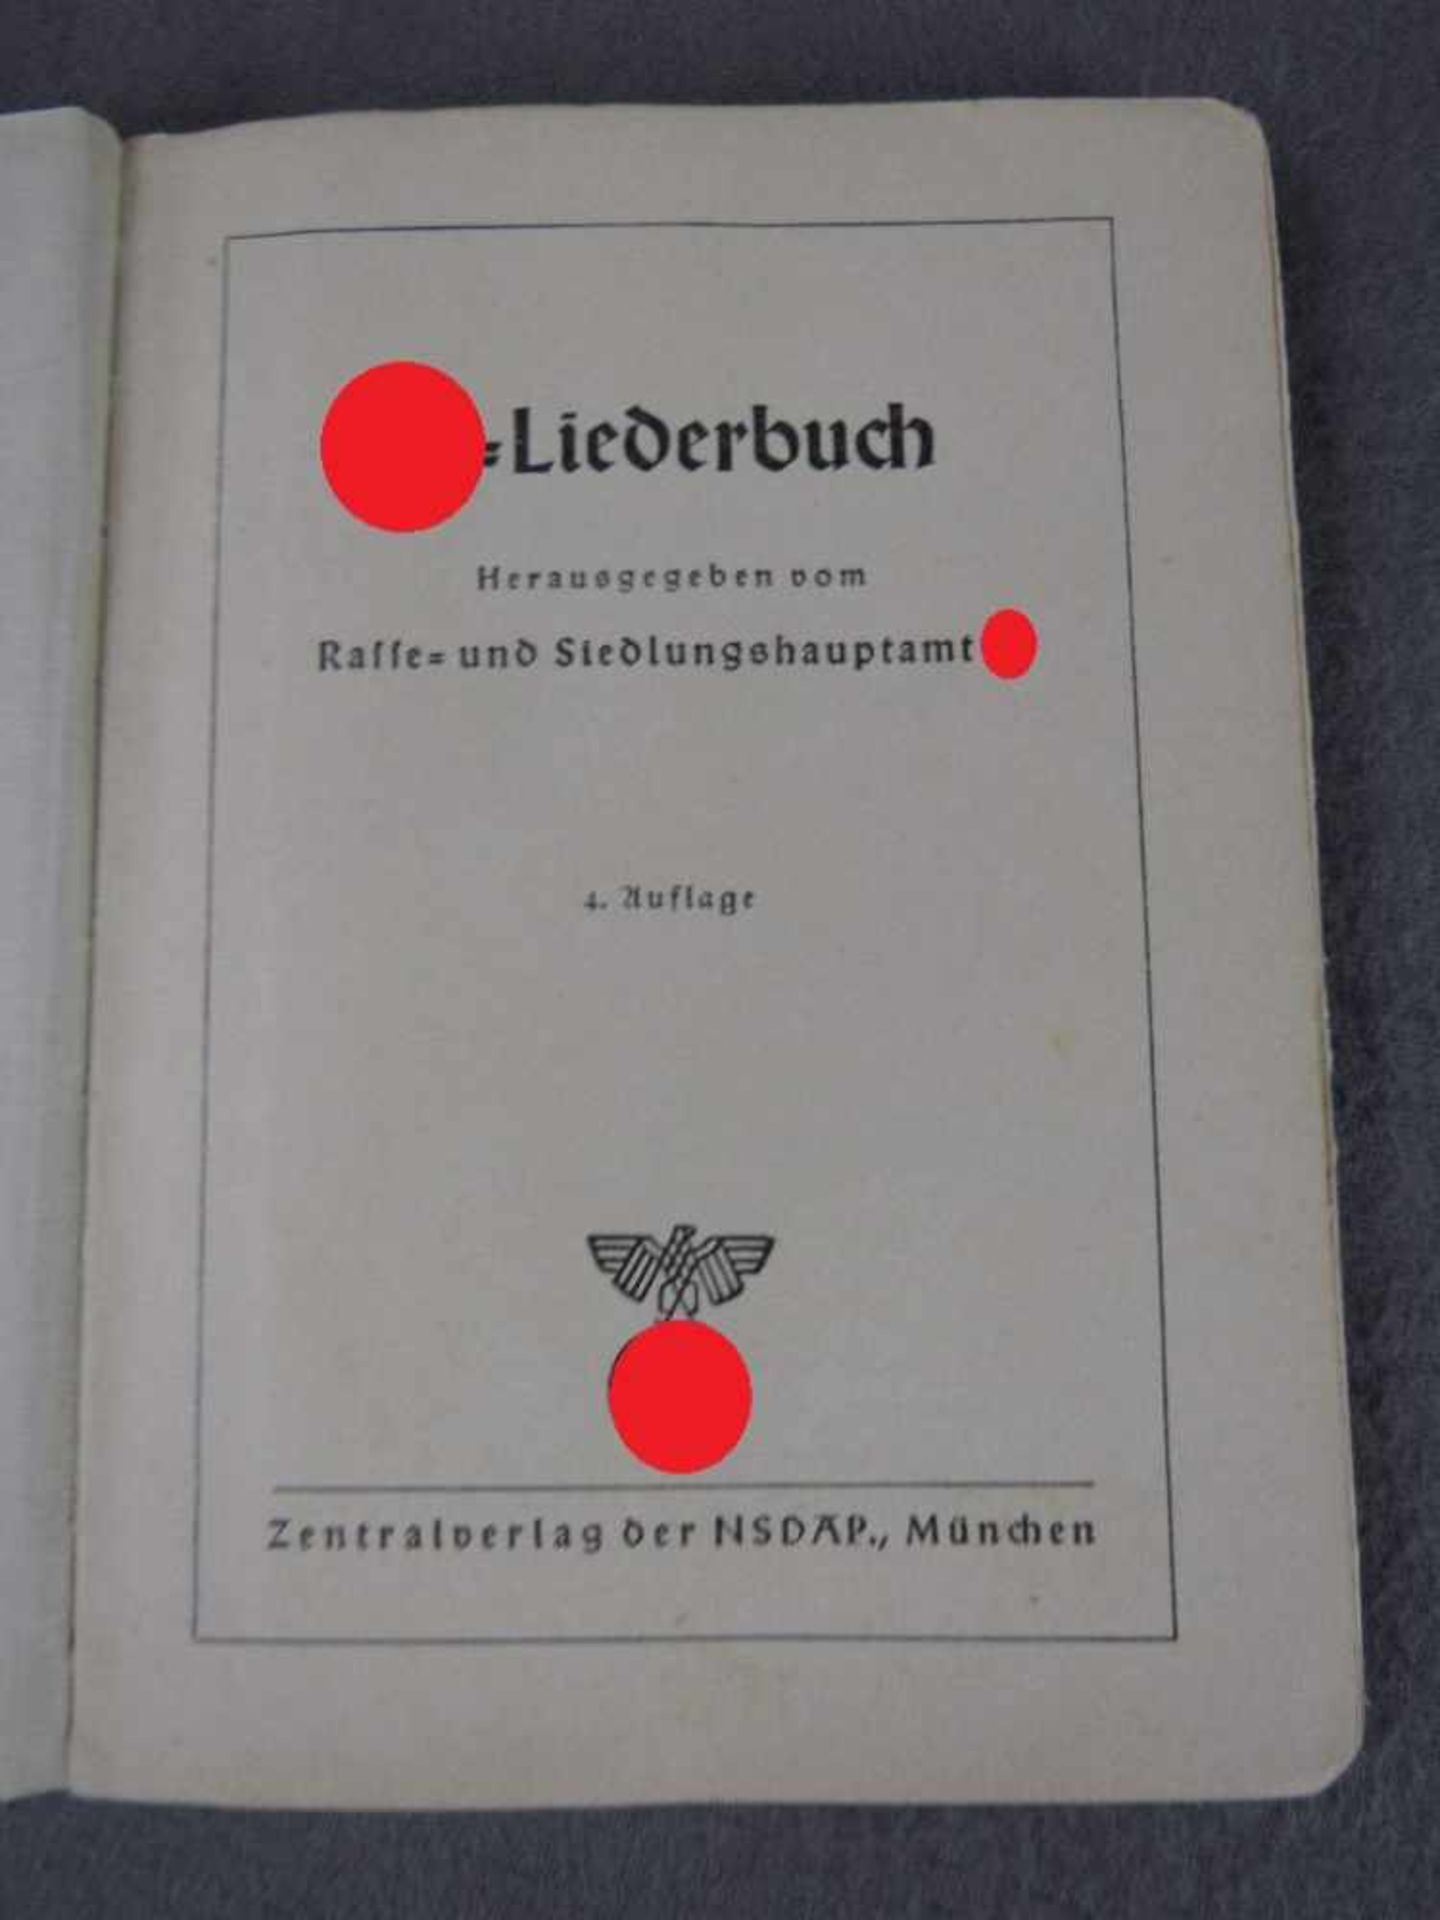 Seltenes SS Gesangbuch Liederbuch herausgegeben vom Rasse und Siedlungshauptamt der SS 4. Auflage - Bild 2 aus 5